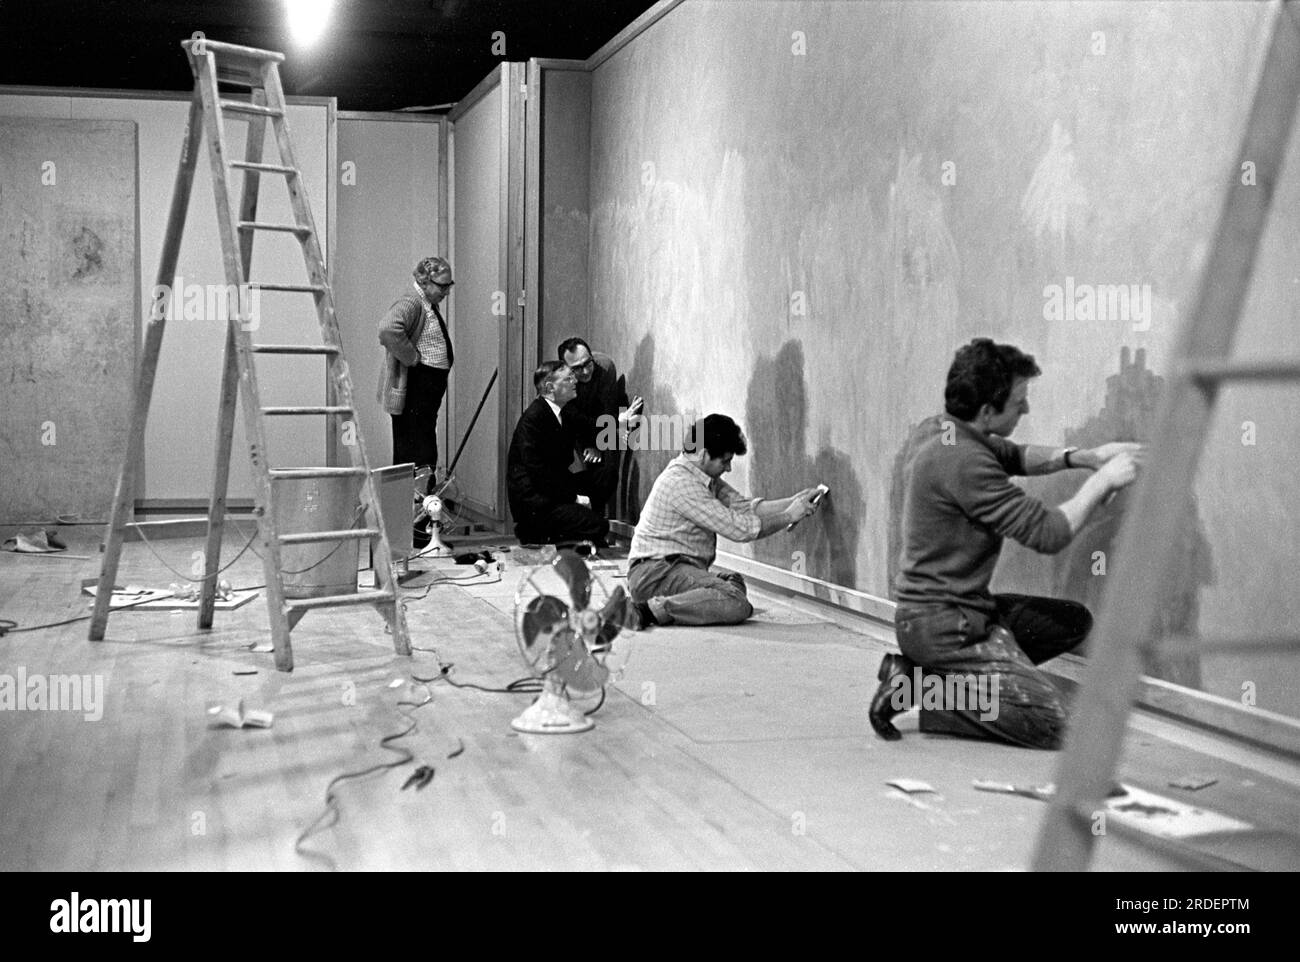 Appendere gli affreschi di Firenze, una mostra del Consiglio d'Arte alla Hayward Gallery. Preparare la superficie del muro. Londra, Inghilterra circa 1969 1960S Regno Unito HOMER SYKES Foto Stock